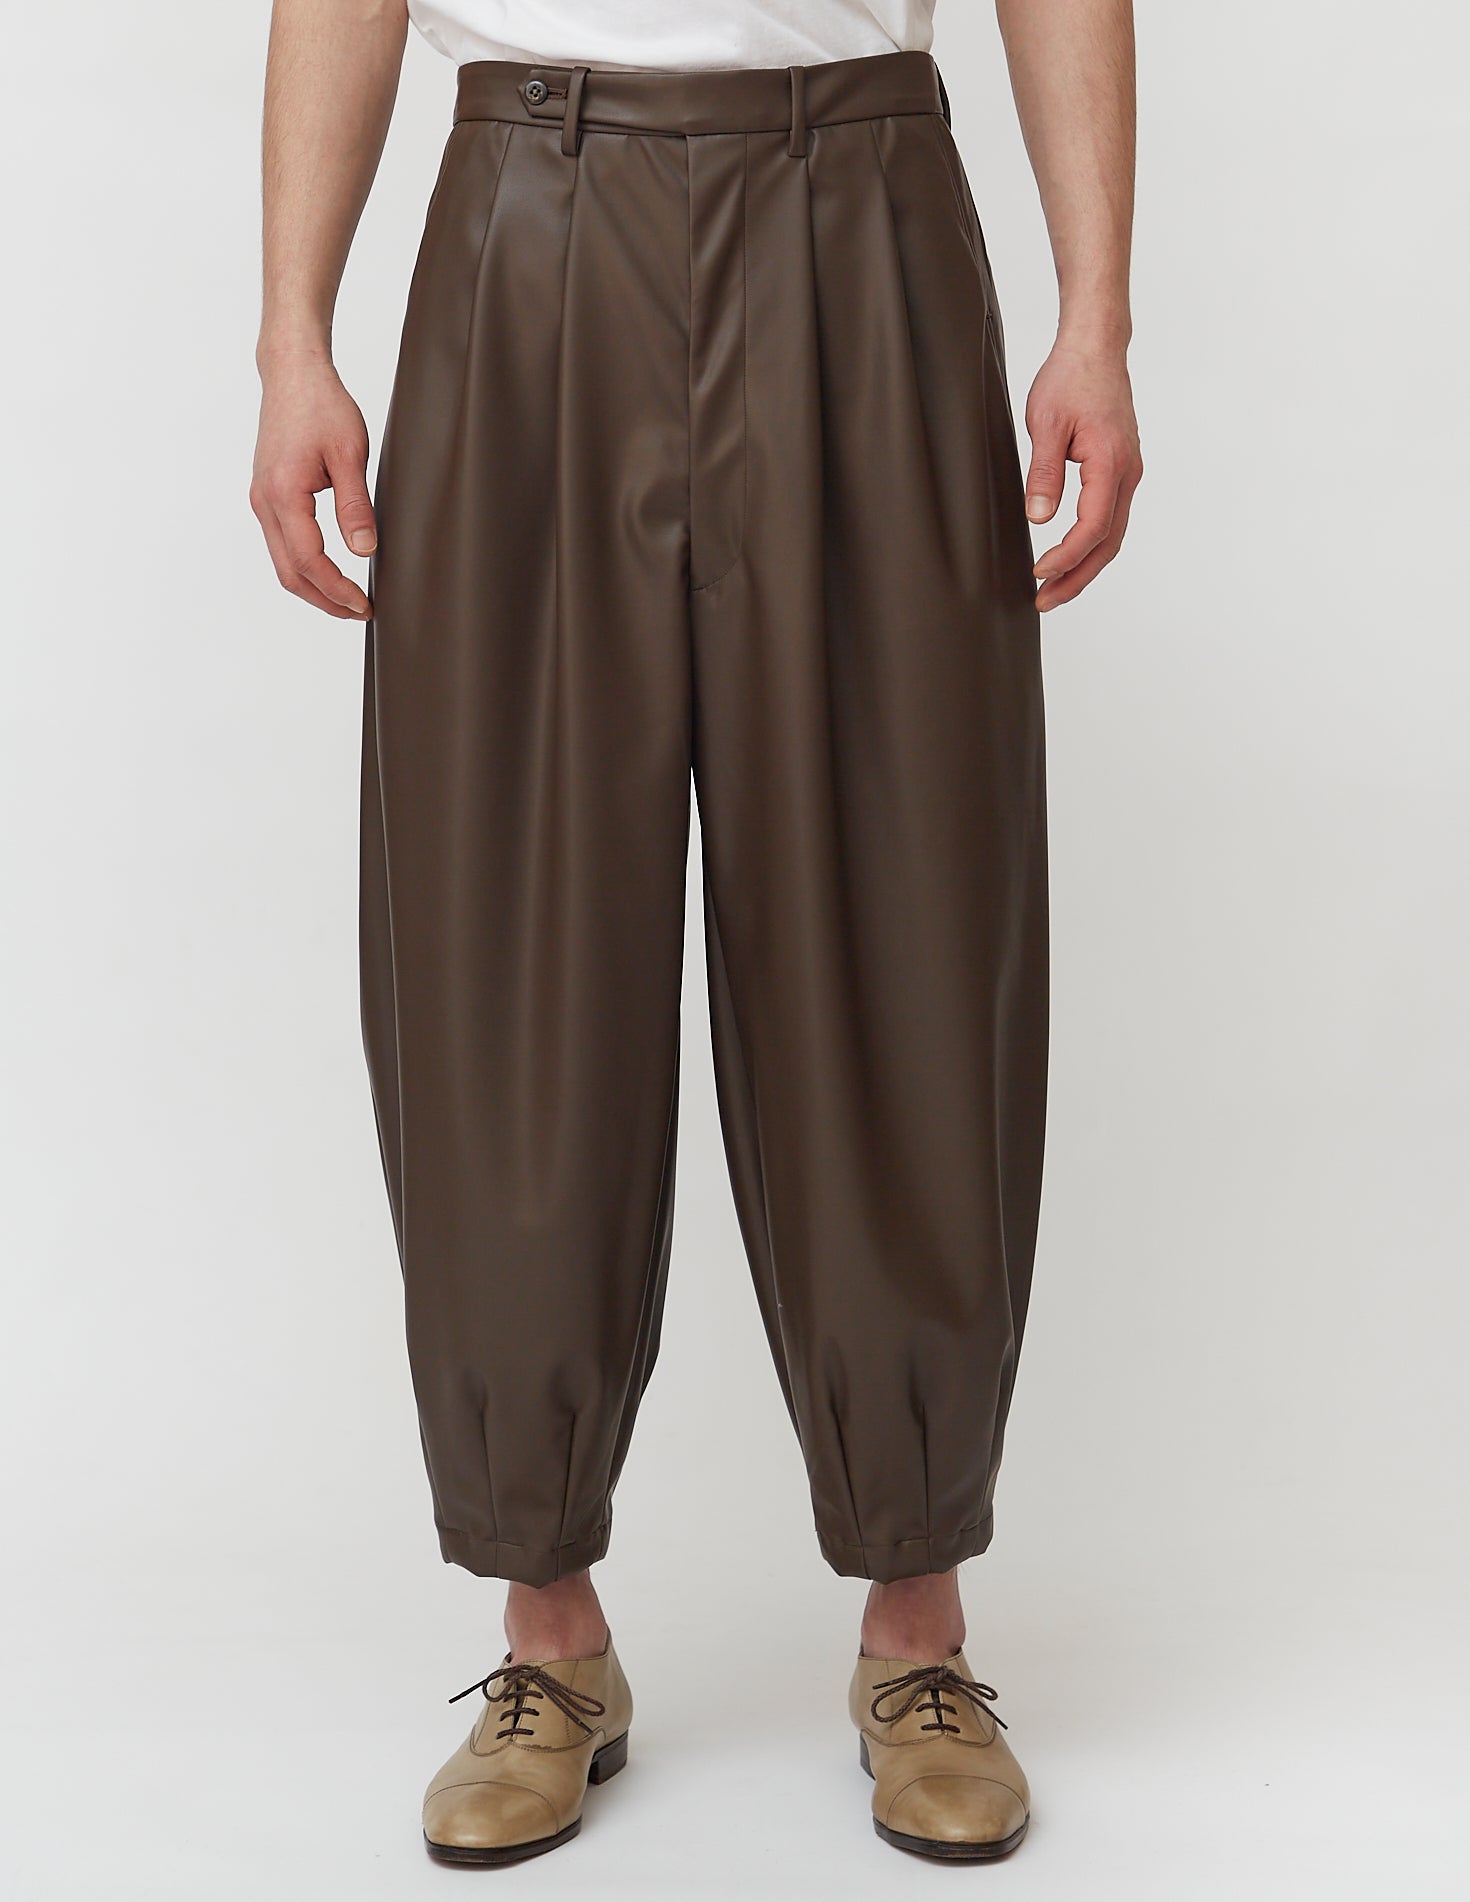 Harem Pants faux leather black/brown